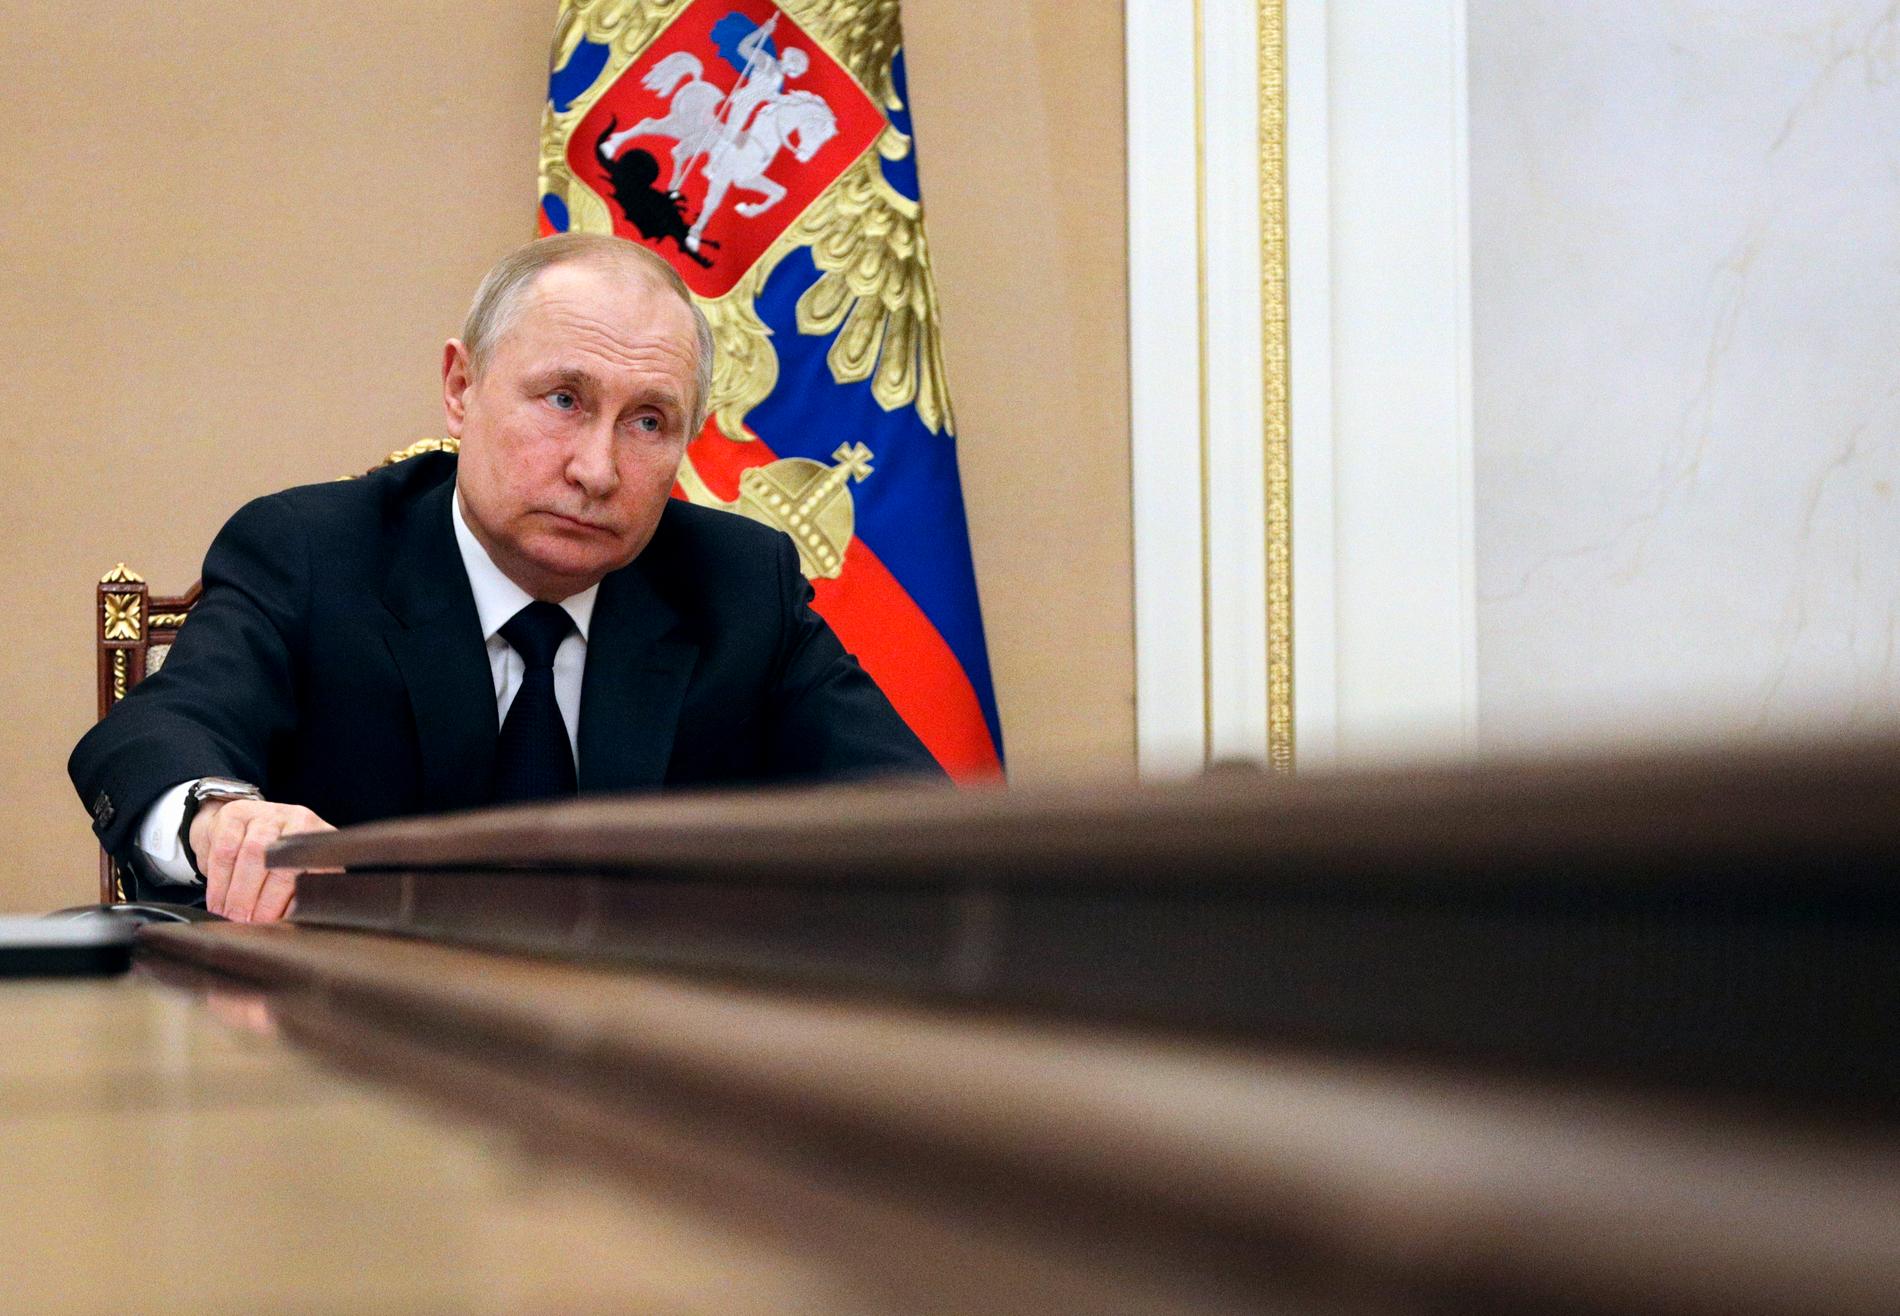 ”Putin underskattade demokratins kraft och det gjorde vi själva som vanligt också”, skriver Peter Kadhammar.